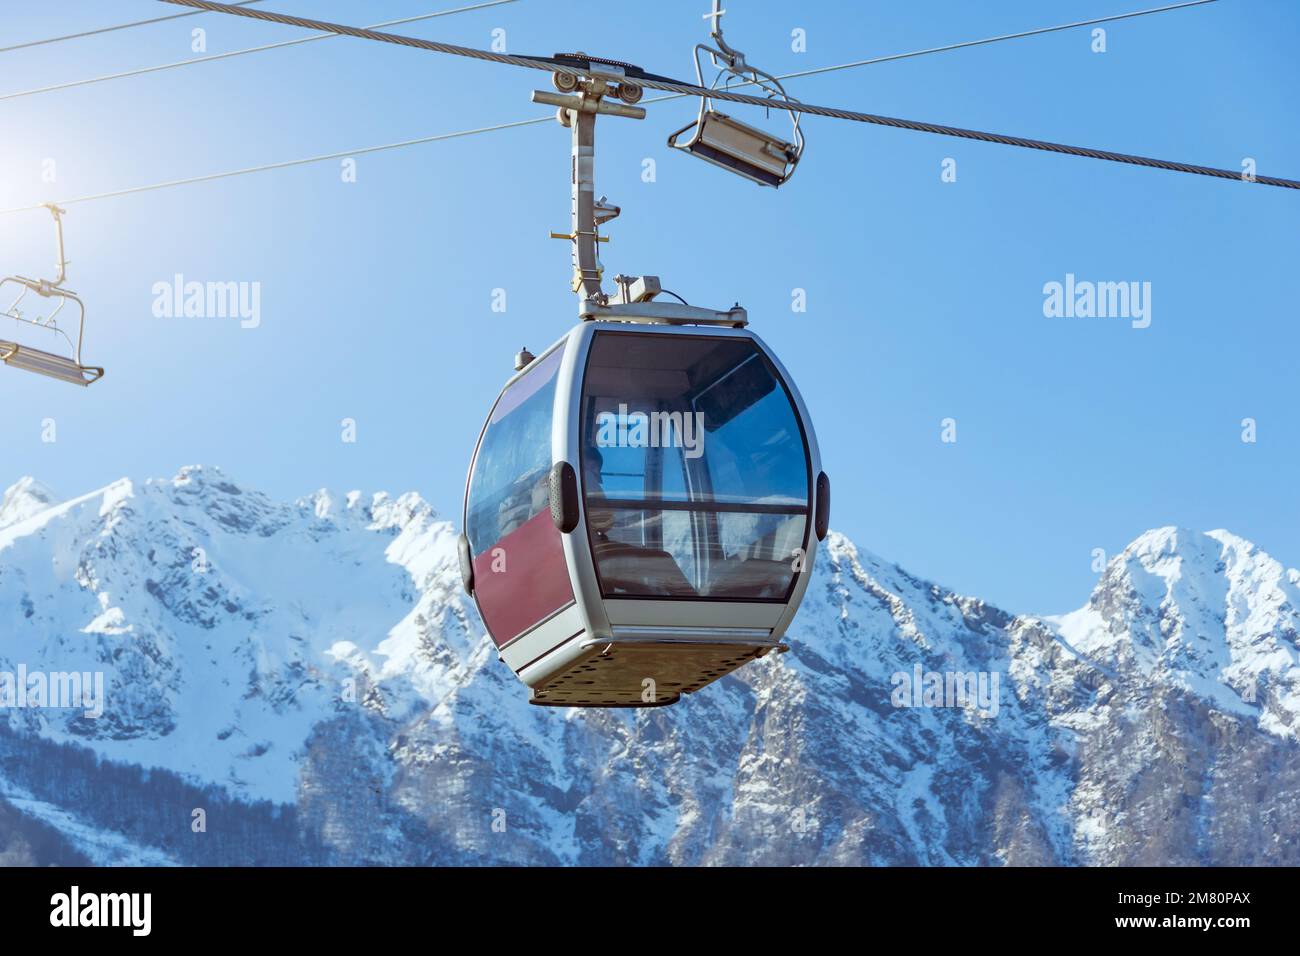 Teleférico en las pistas de una estación de esquí con casas y un pico nevado en la distancia, soleado día de invierno Foto de stock